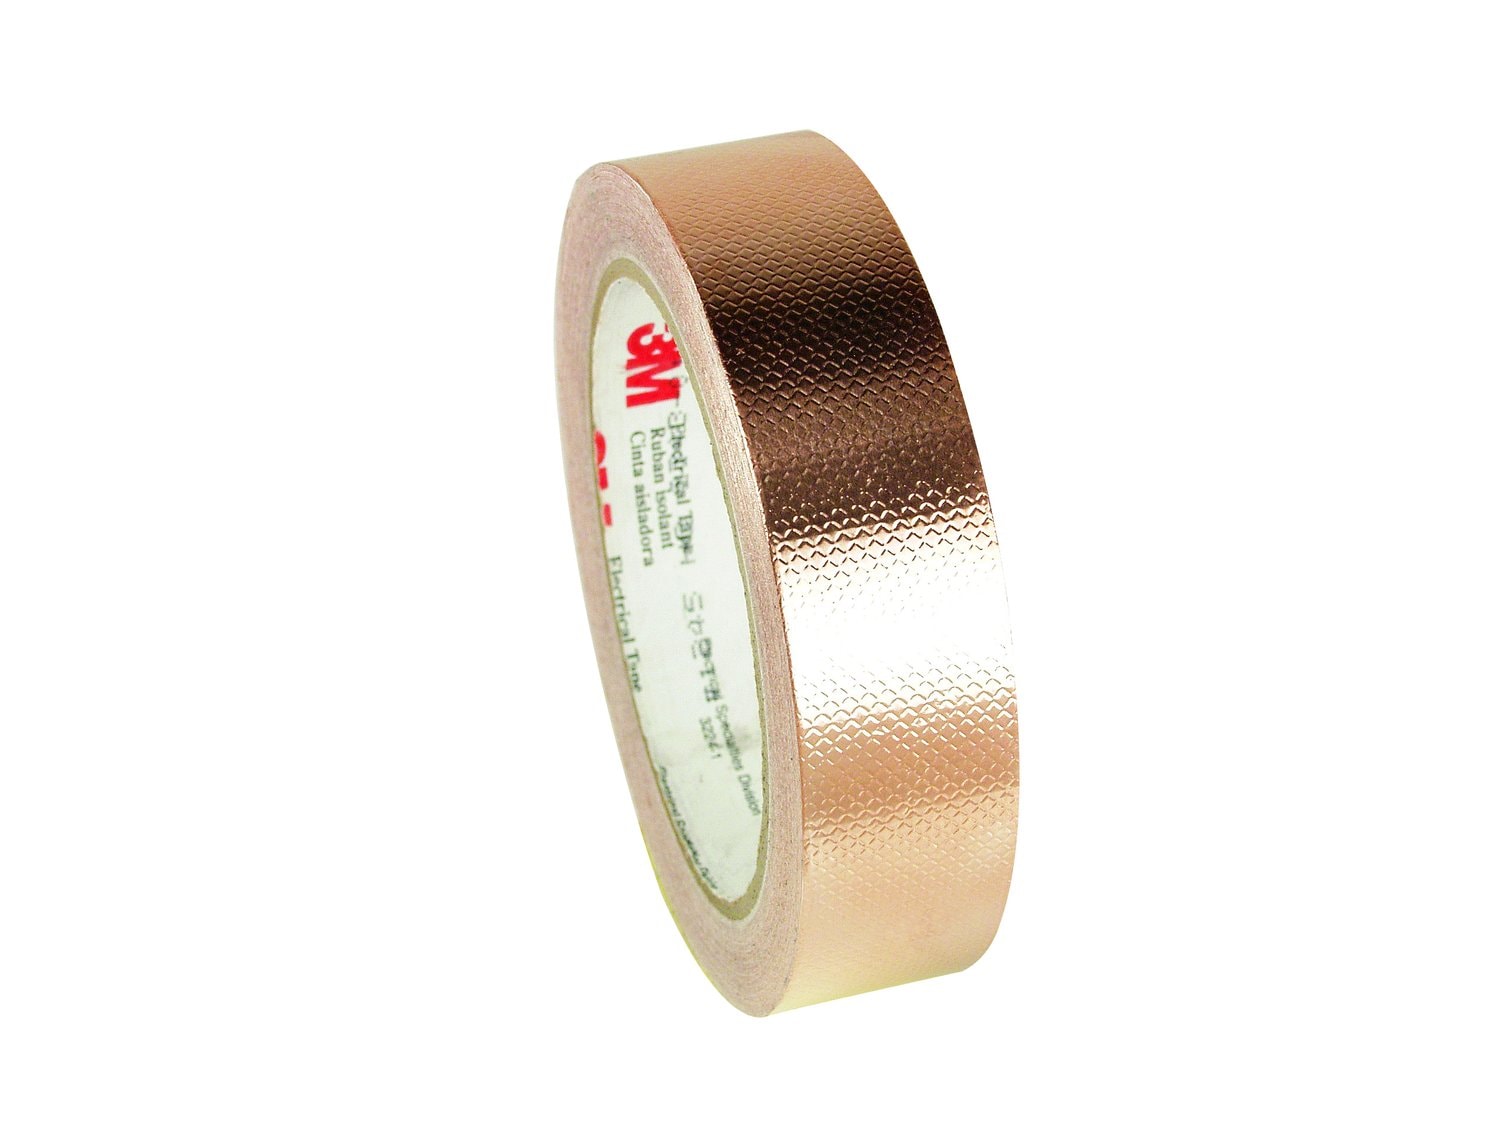 7010395786 - 3M Embossed Copper Foil EMI Shielding Tape 1245, 3/4 in x 18 yd, 3 in
Paper Core, 12 Rolls/Case